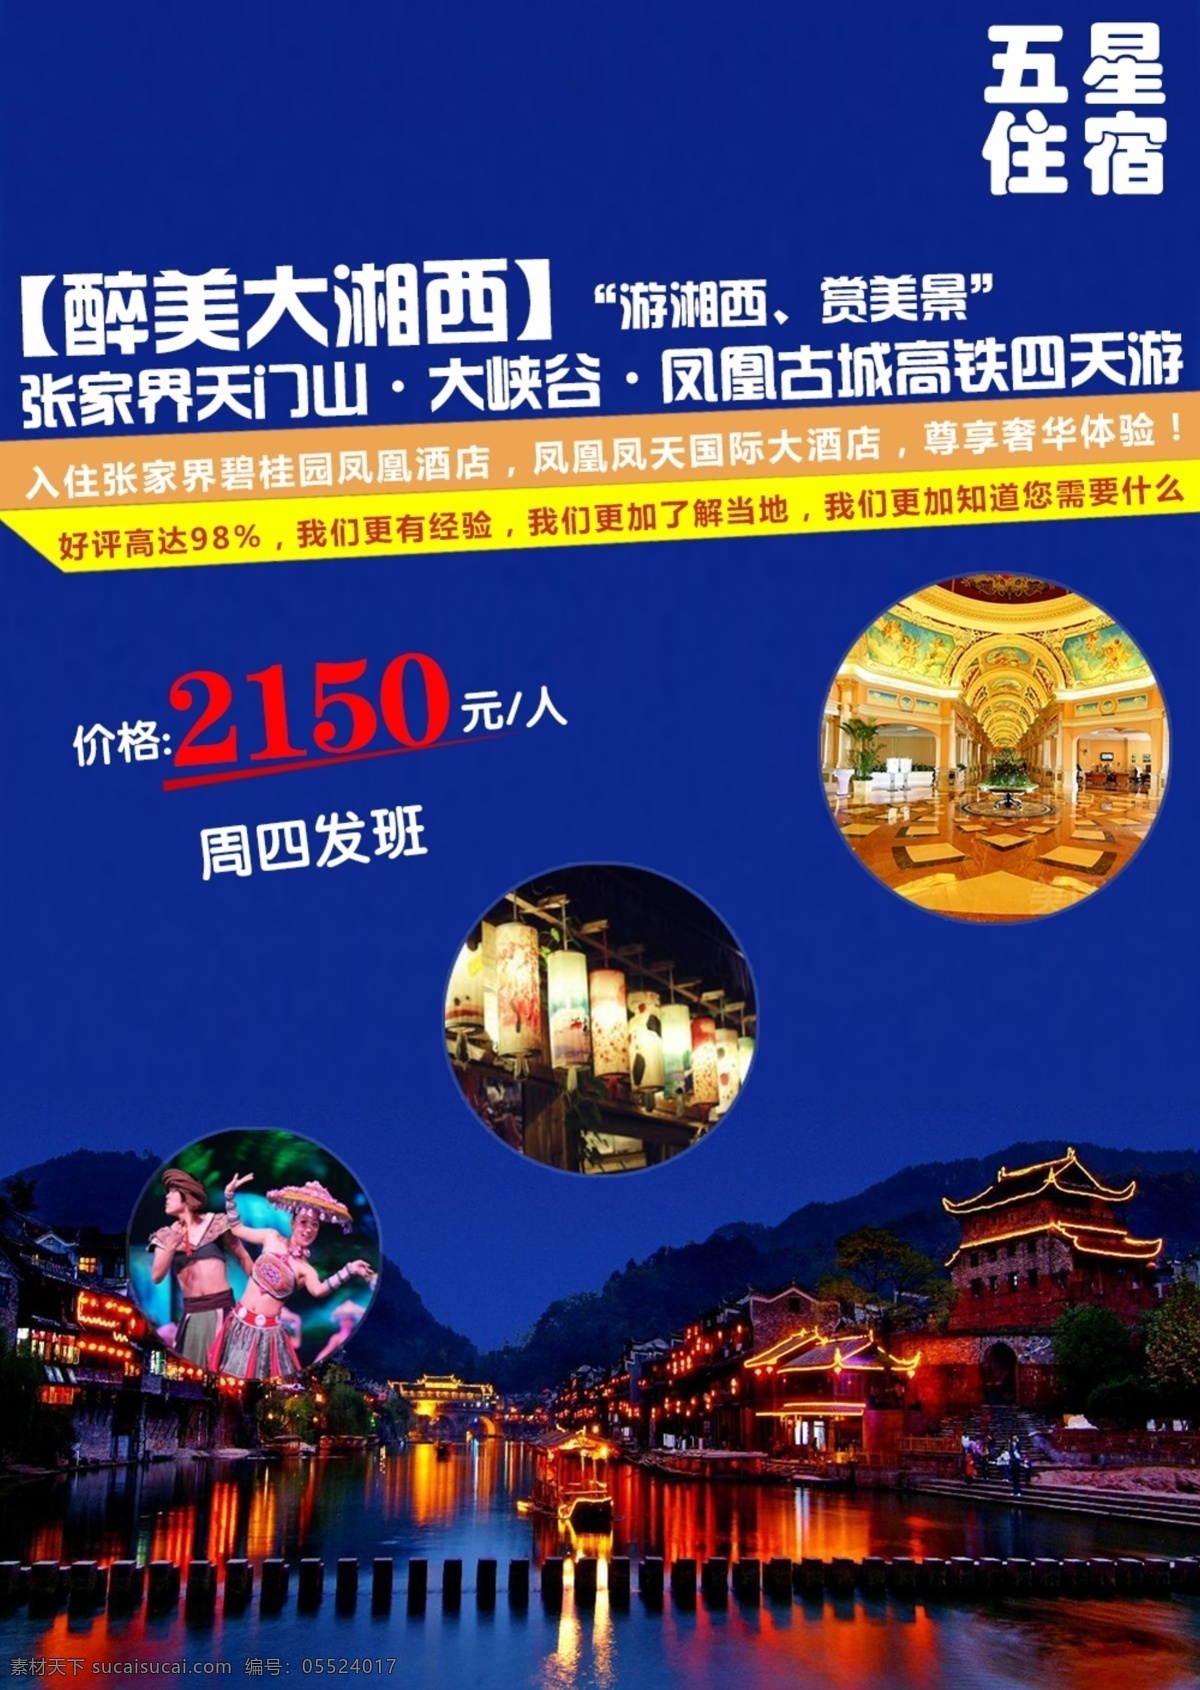 湖南 旅游 海报 图 湘西 电商 宣传图 蓝色